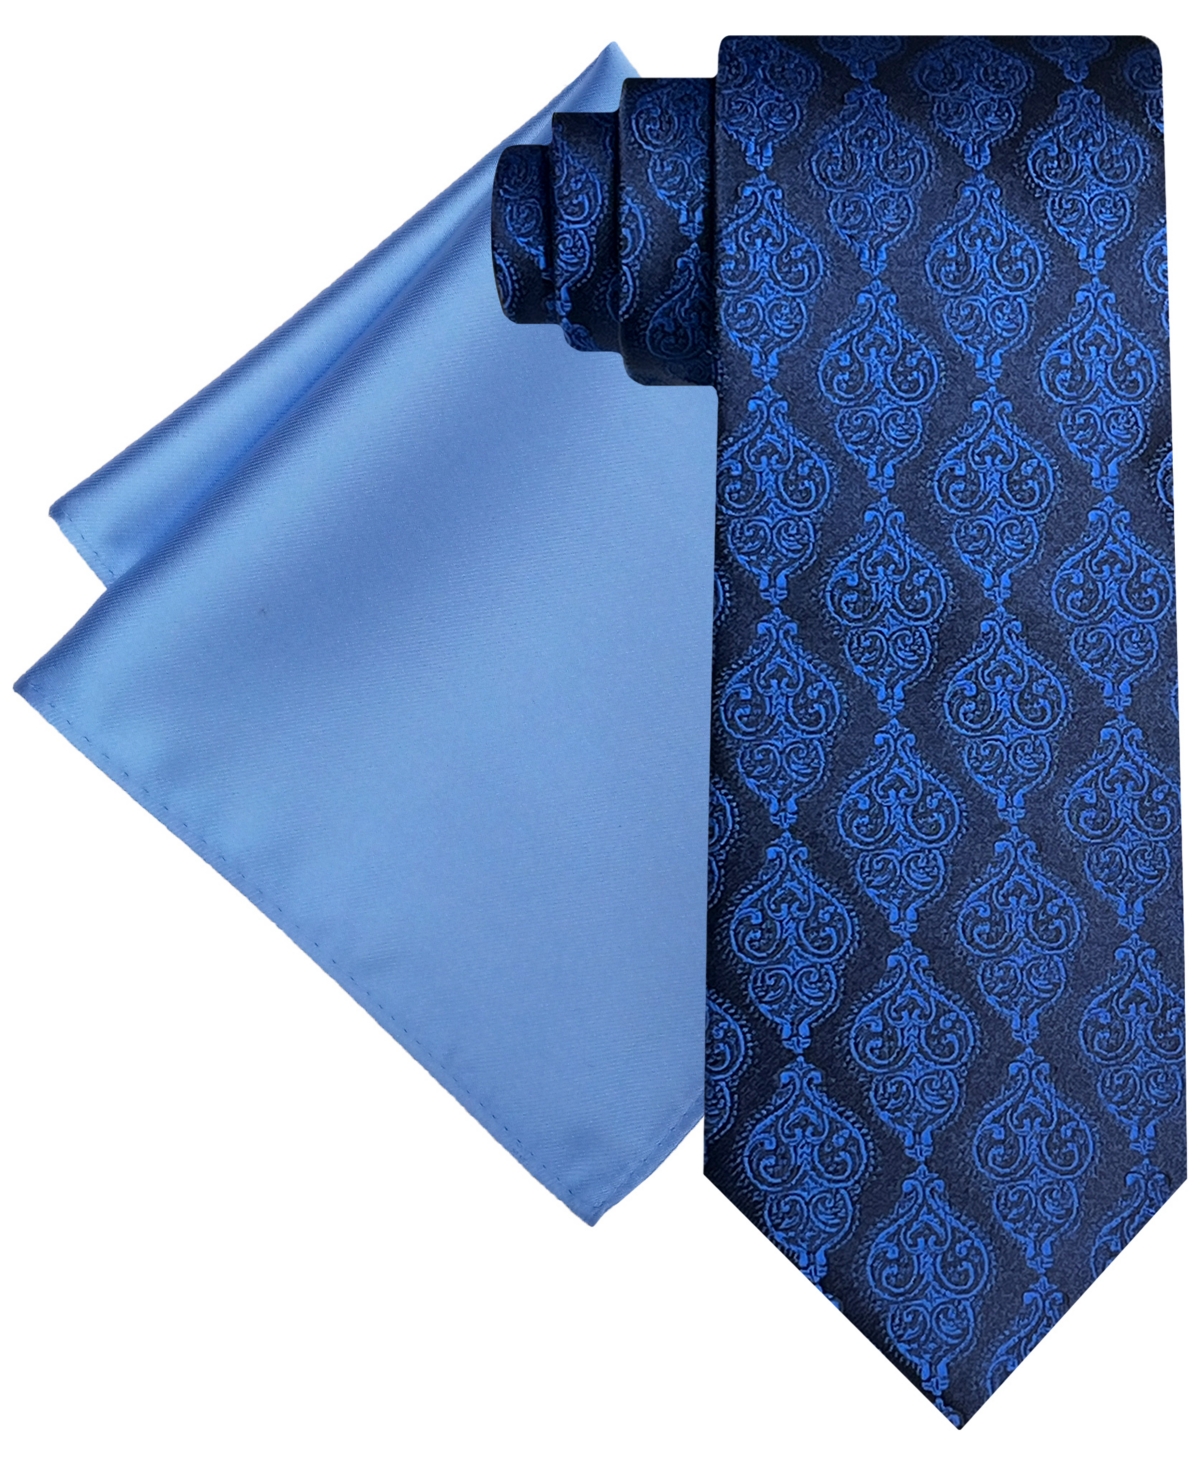 Men's Ornate Royal Tie & Solid Pocket Square Set - Navy